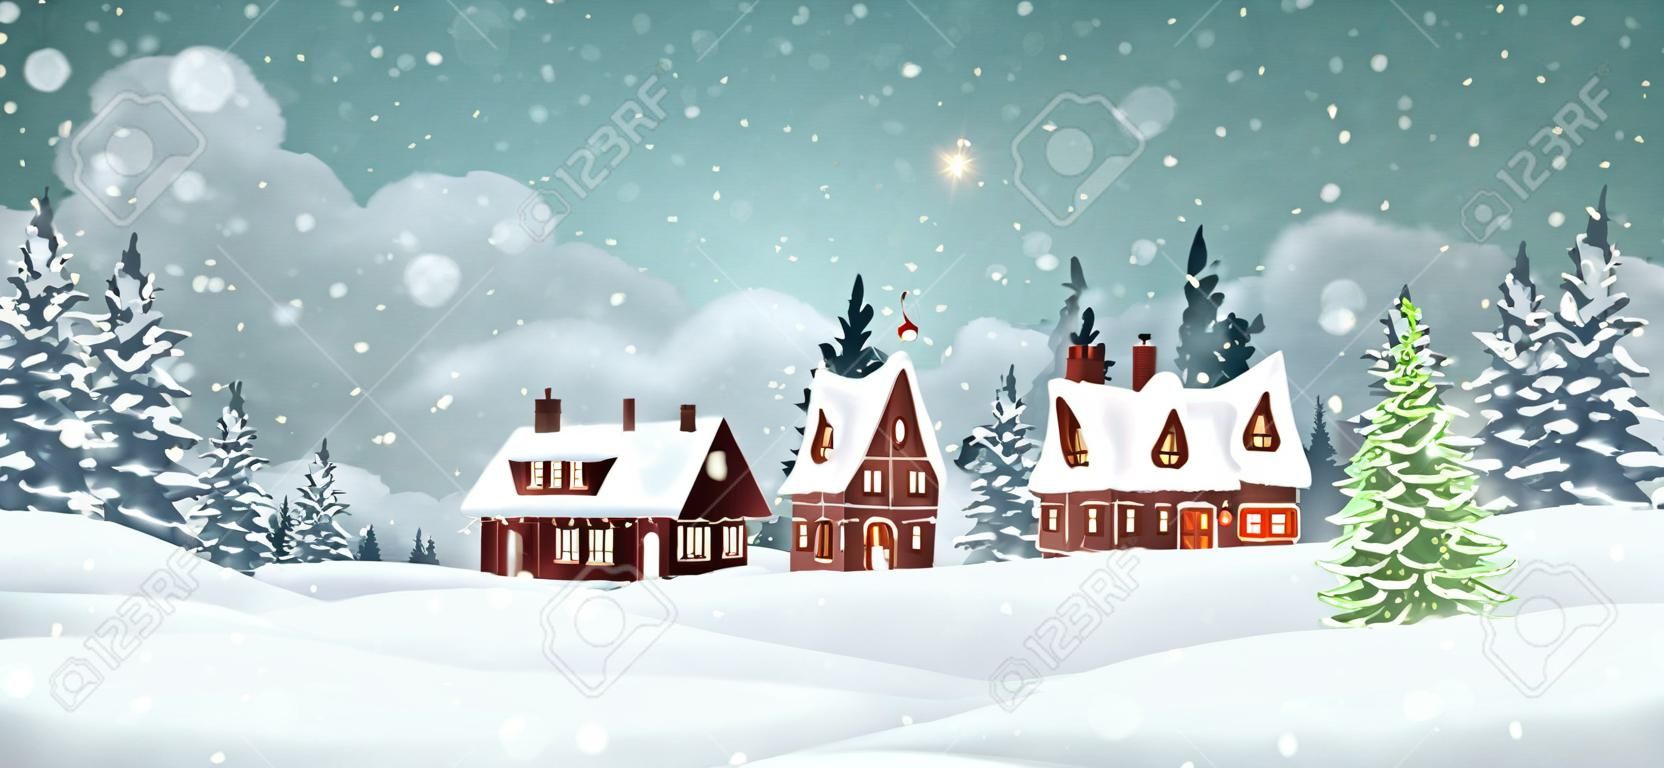 Świąteczne domy wiejskie z zimowym lasem sosnowym. święta bożego narodzenia ilustracji wektorowych